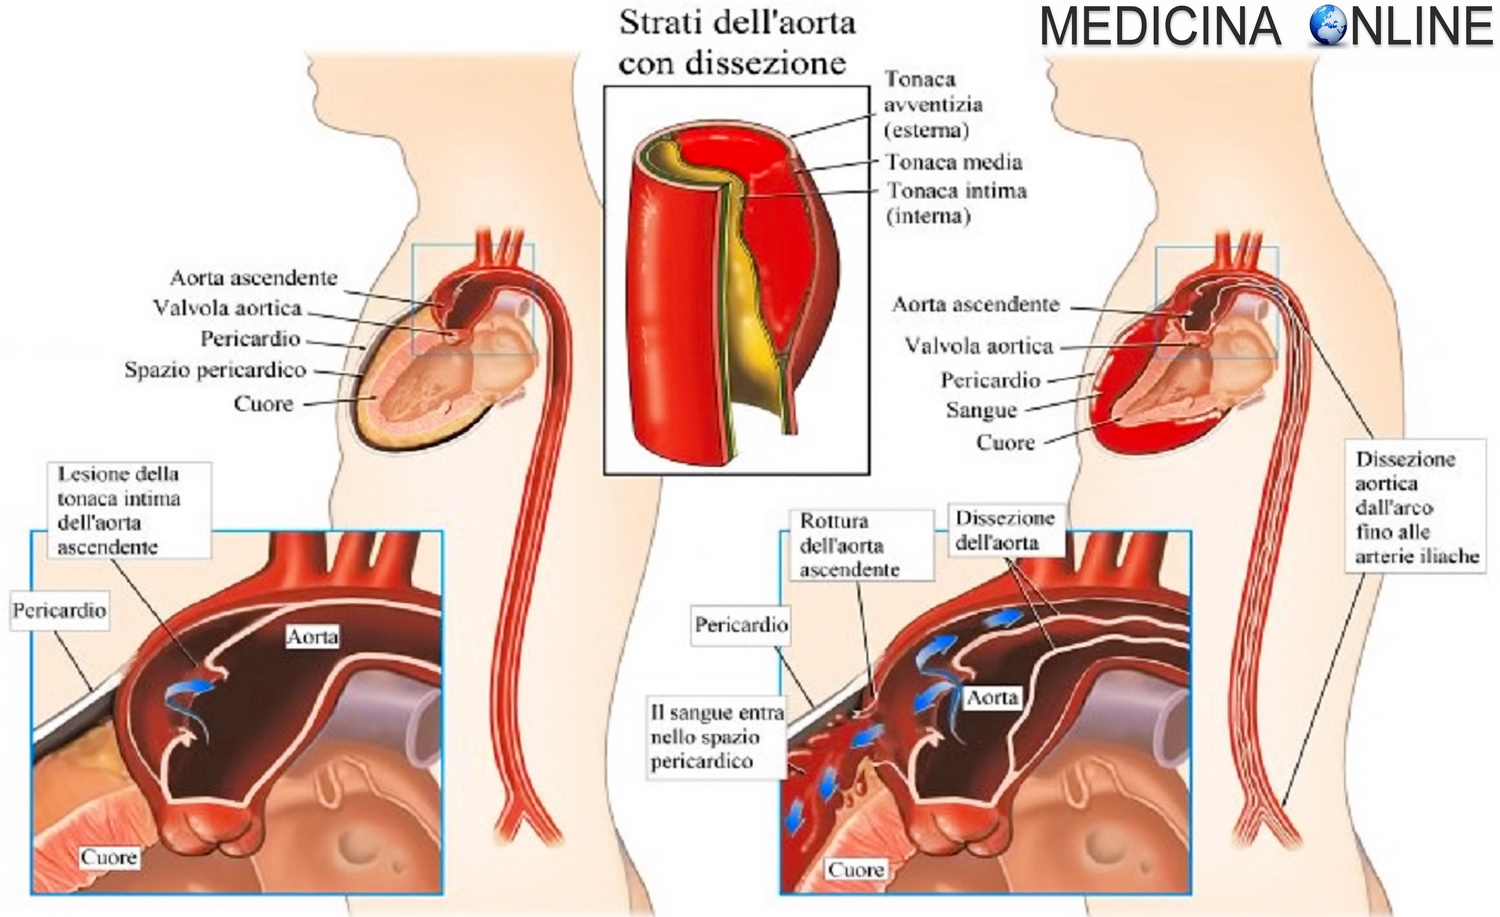 Aspettativa di vita dopo sostituzione valvola aortica